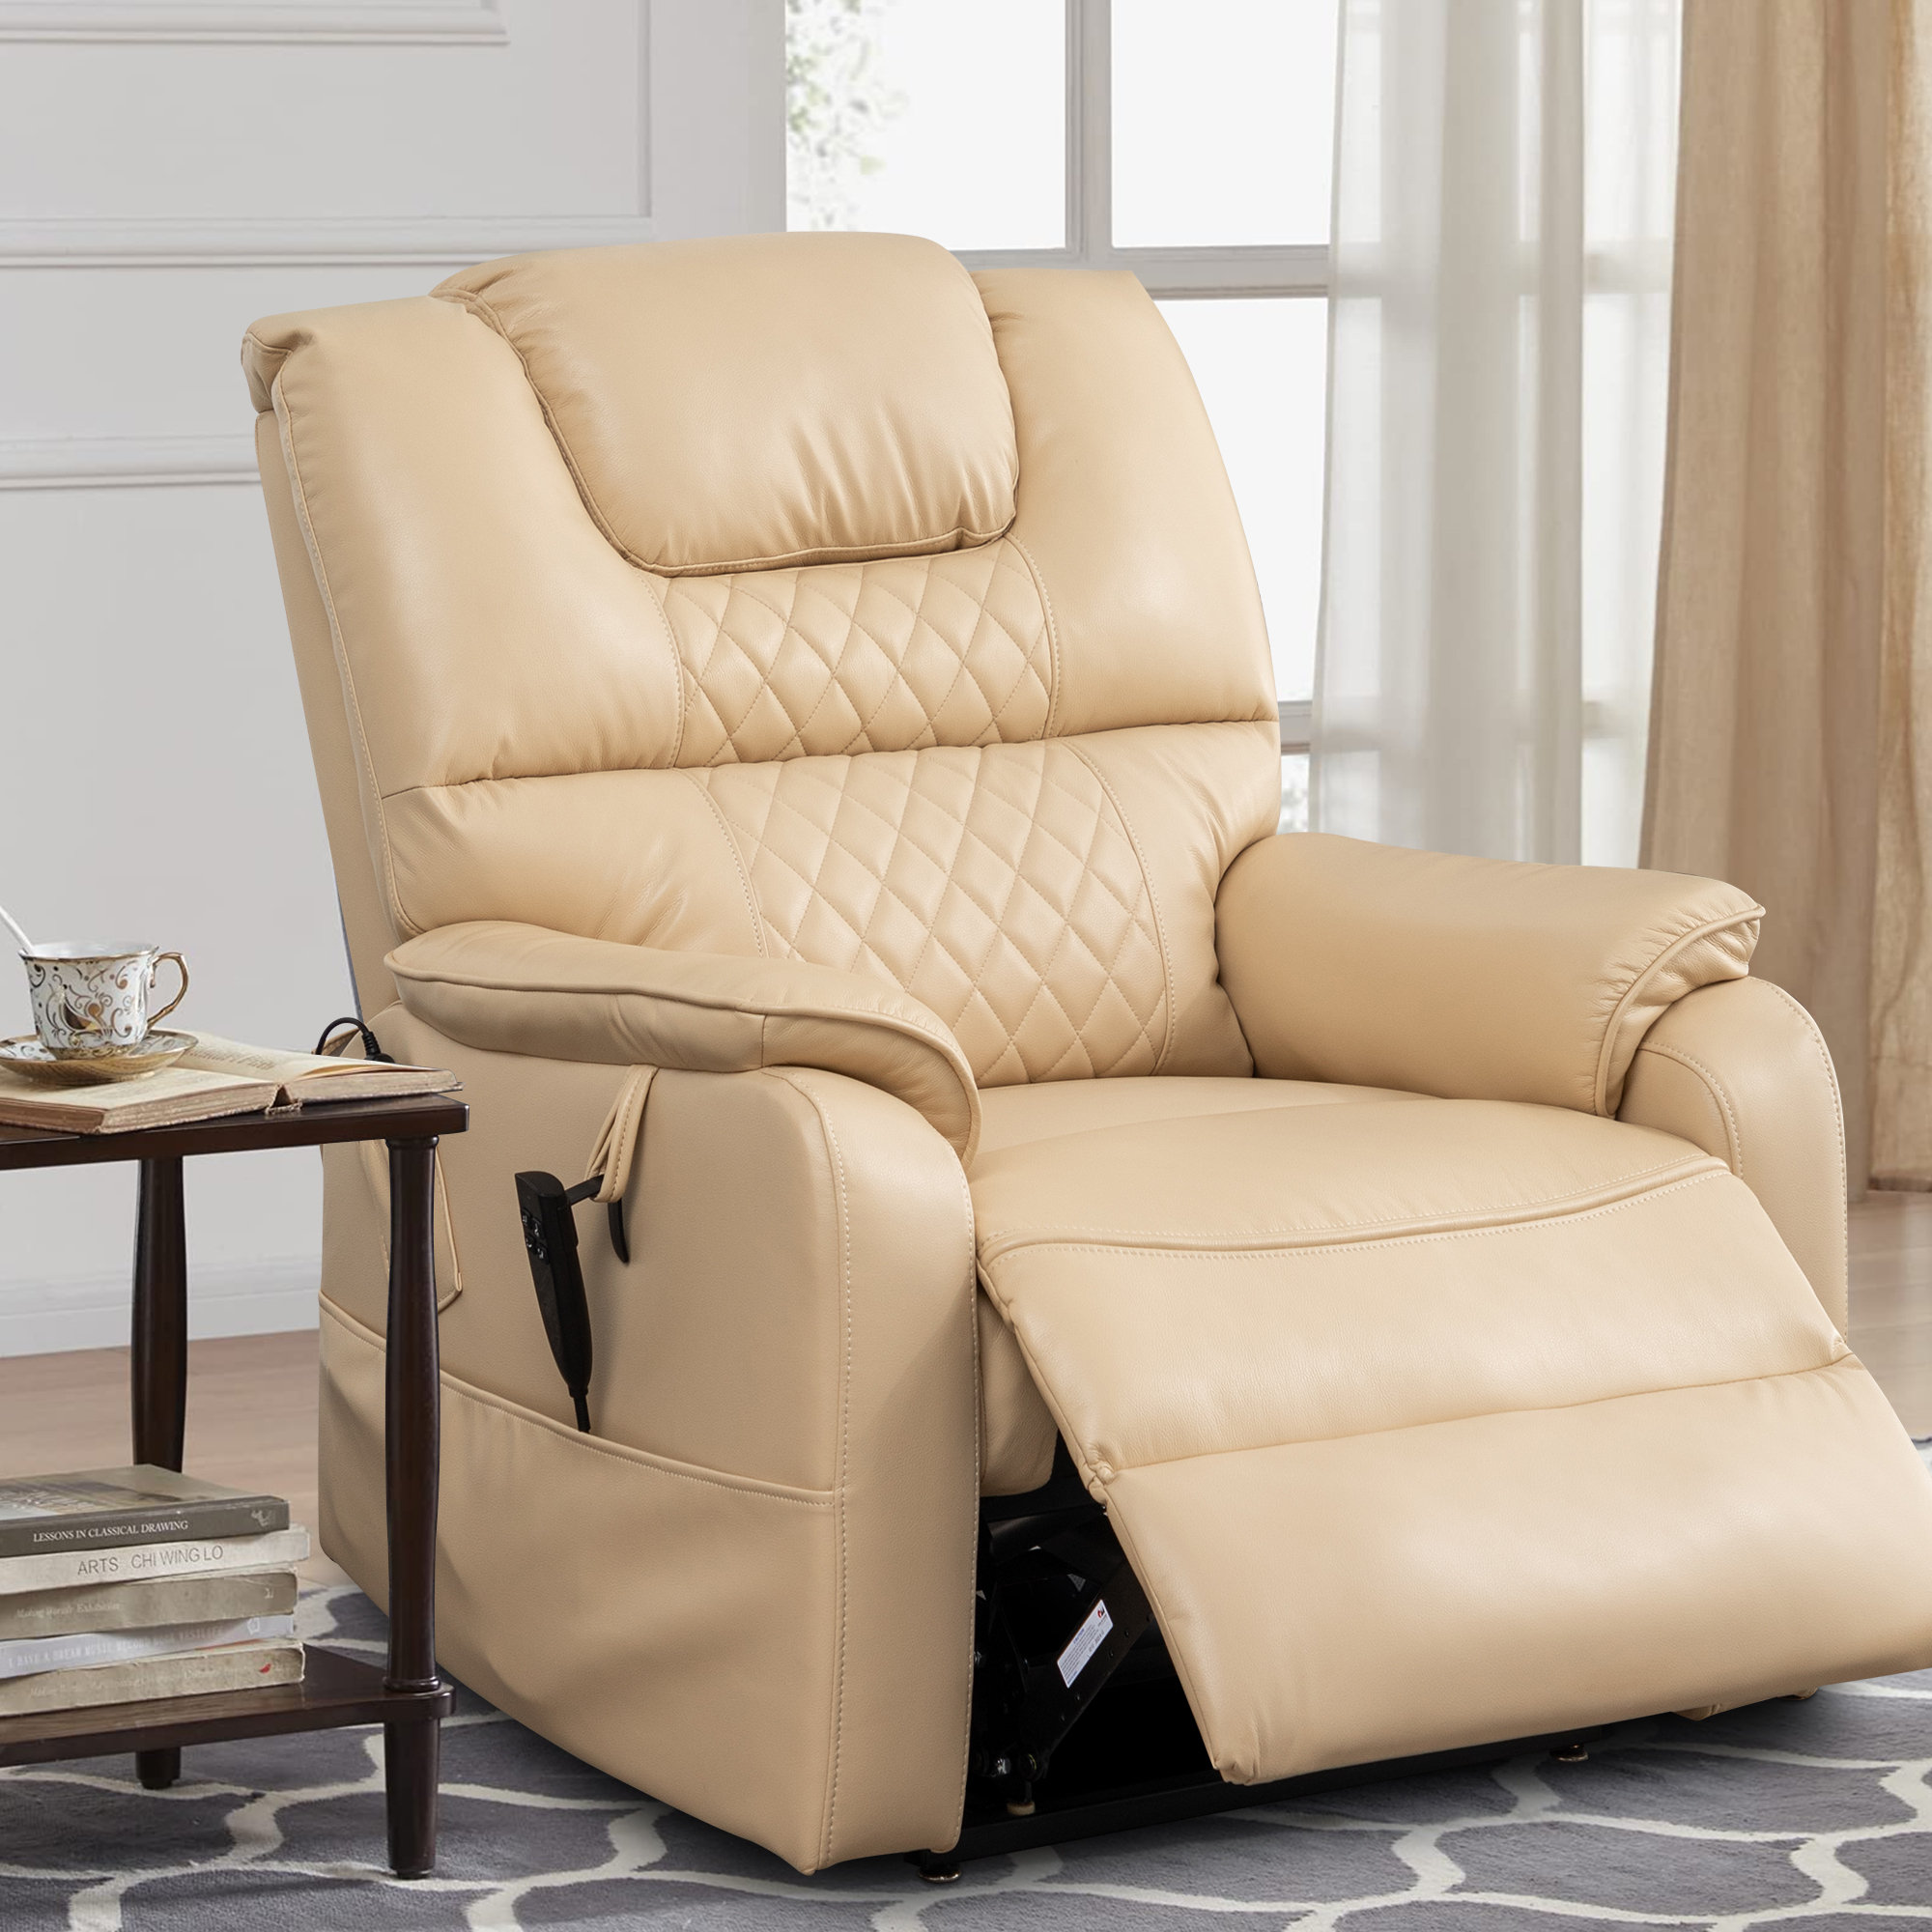 https://assets.wfcdn.com/im/10455150/compr-r85/2464/246458467/daqwane-355w-dual-electric-power-lift-recliner-chair-massage-heat-for-elderly-lie-flat-180-degrees.jpg